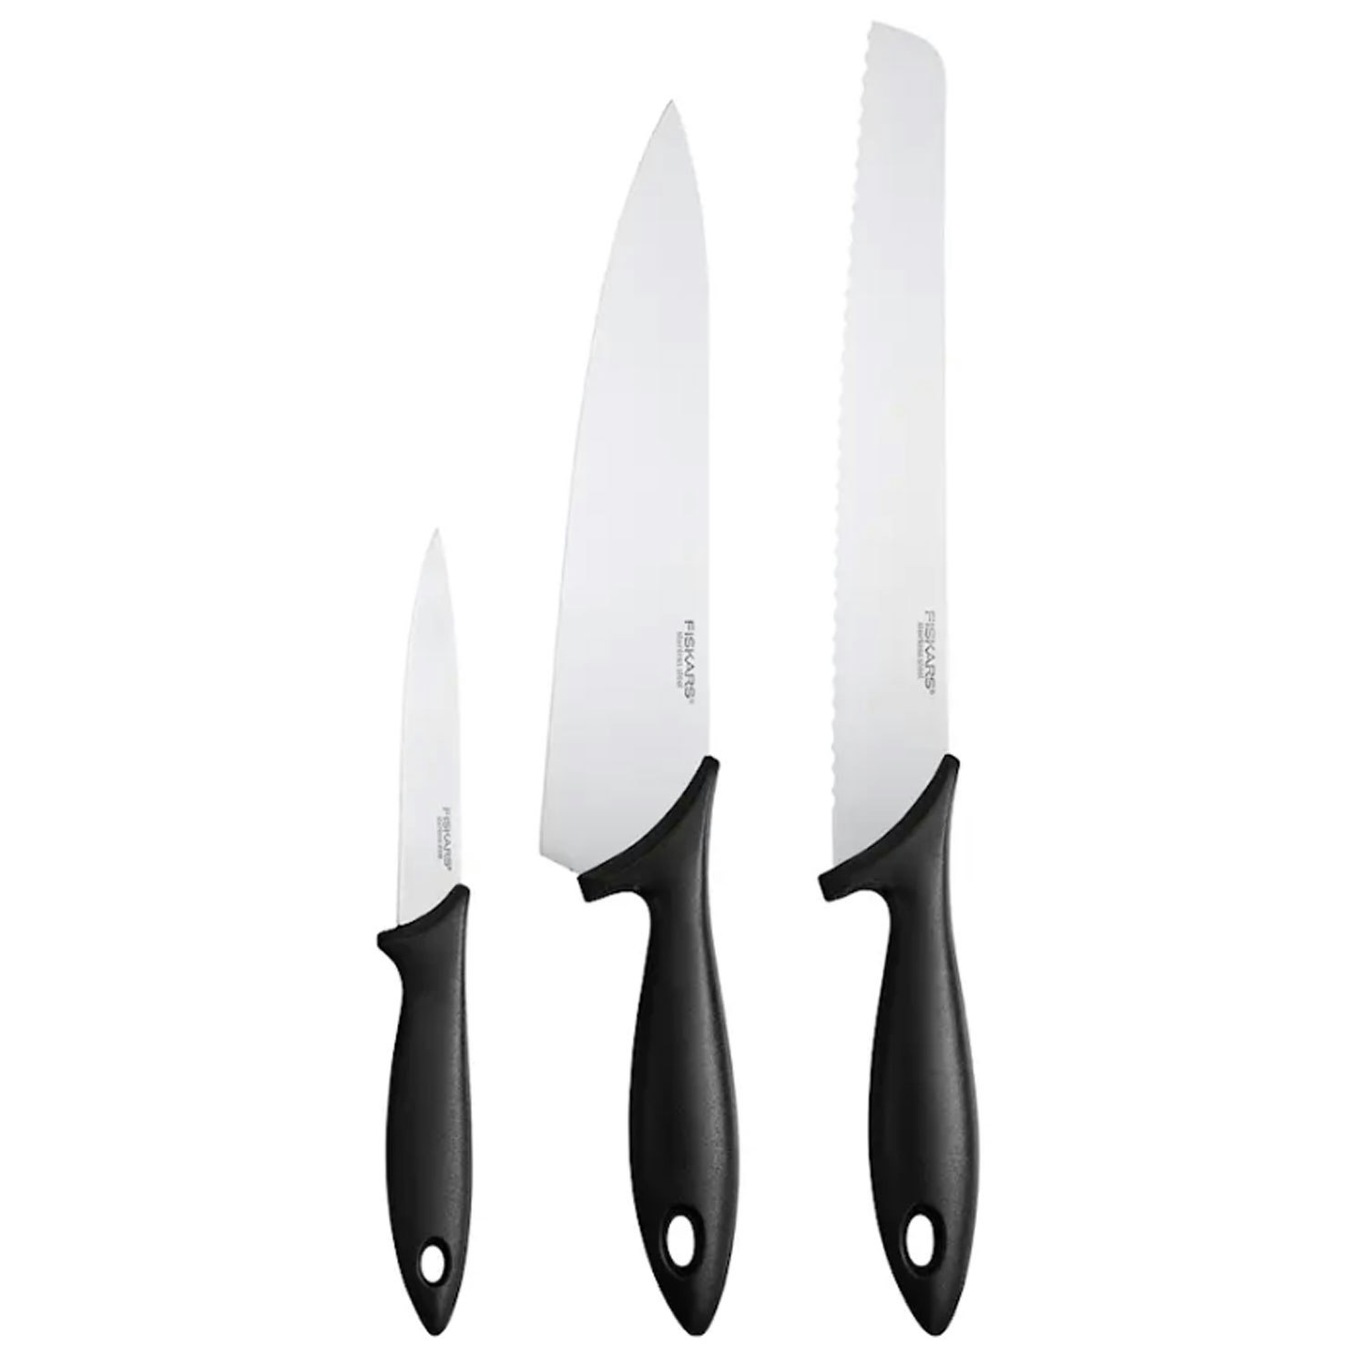 https://royaldesign.com/image/2/fiskars-essential-knife-set-3-pieces-0?w=800&quality=80